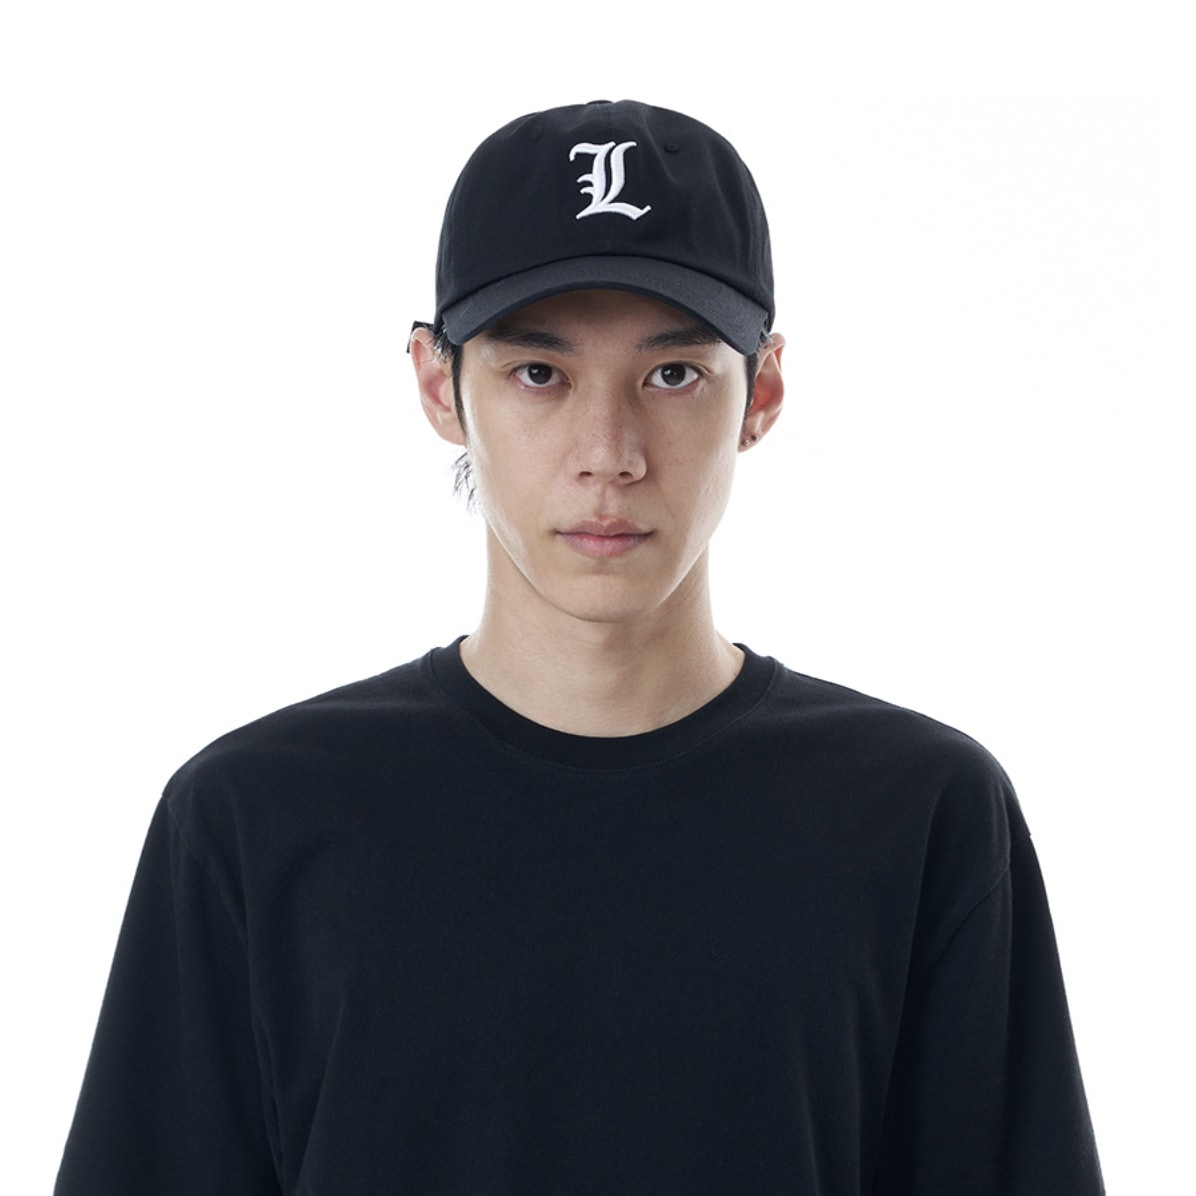 ランキング上位のプレゼント エルロゴボールキャップ（ブラック）韓国ファッション デイリー カップル野球帽子 ユニセックスキャップ キャップ